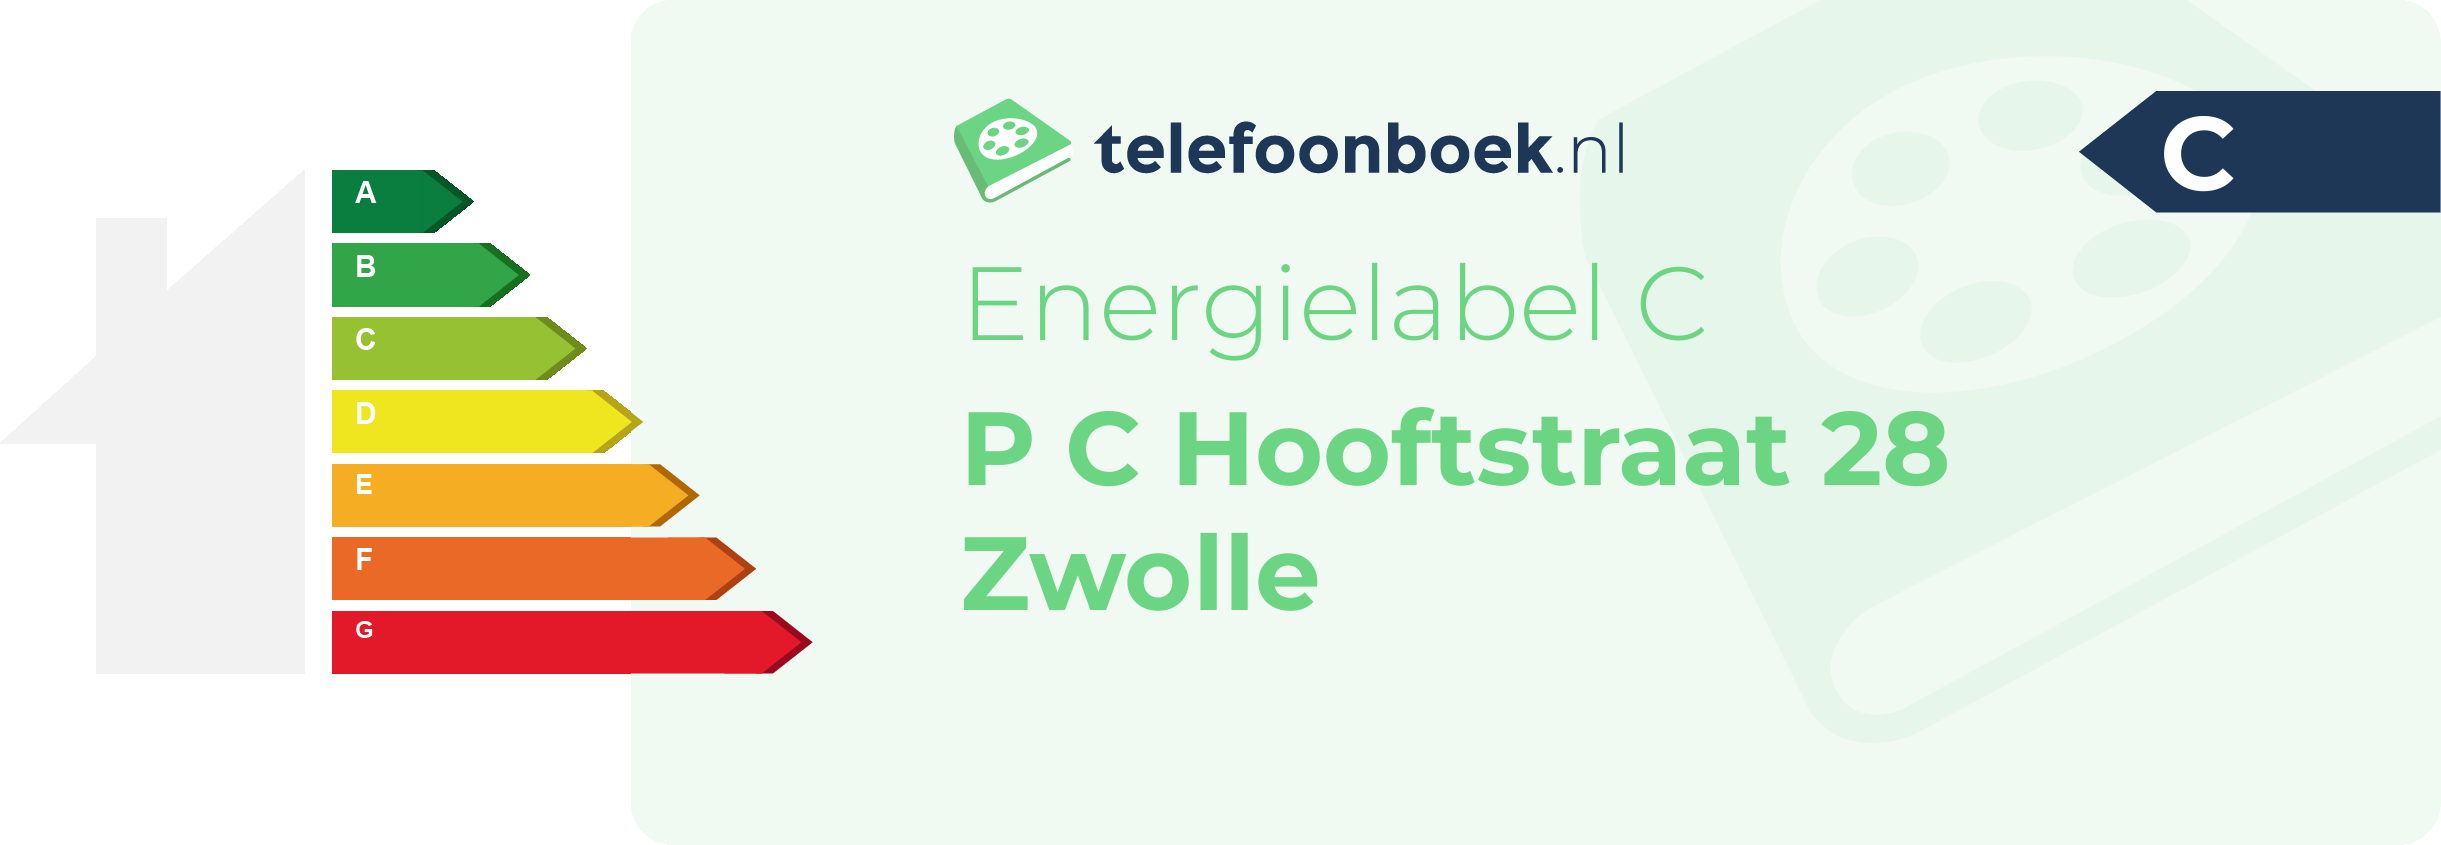 Energielabel P C Hooftstraat 28 Zwolle